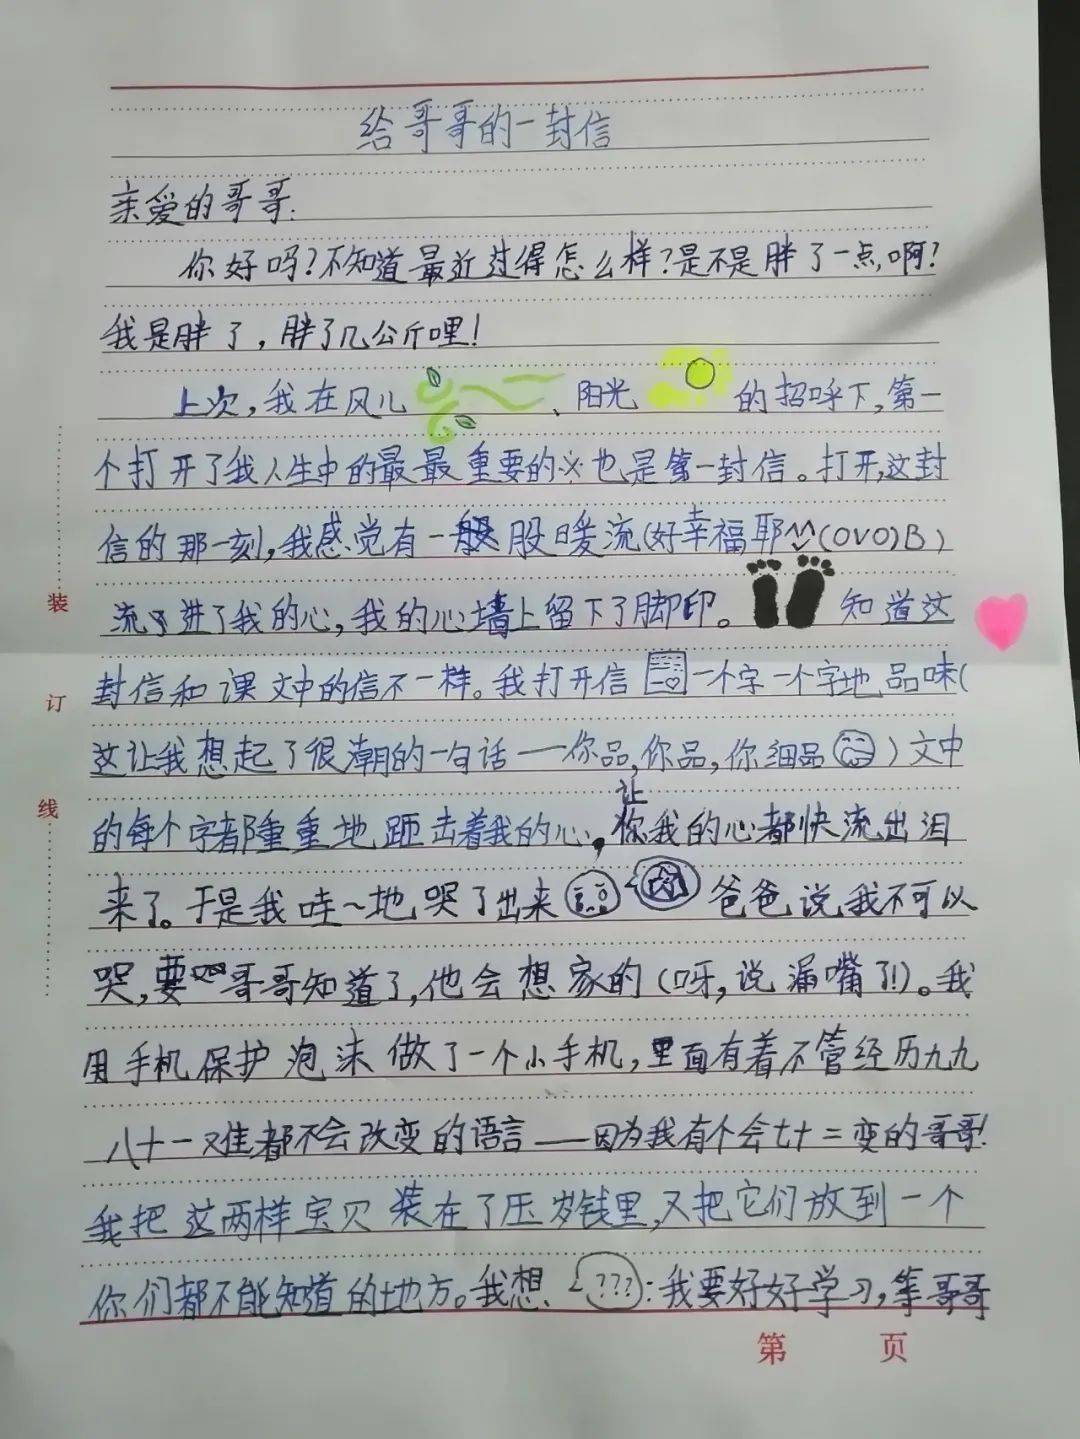 10岁小姑娘写给当兵哥哥的一封信,有一点可爱,有一些温暖!|909城记